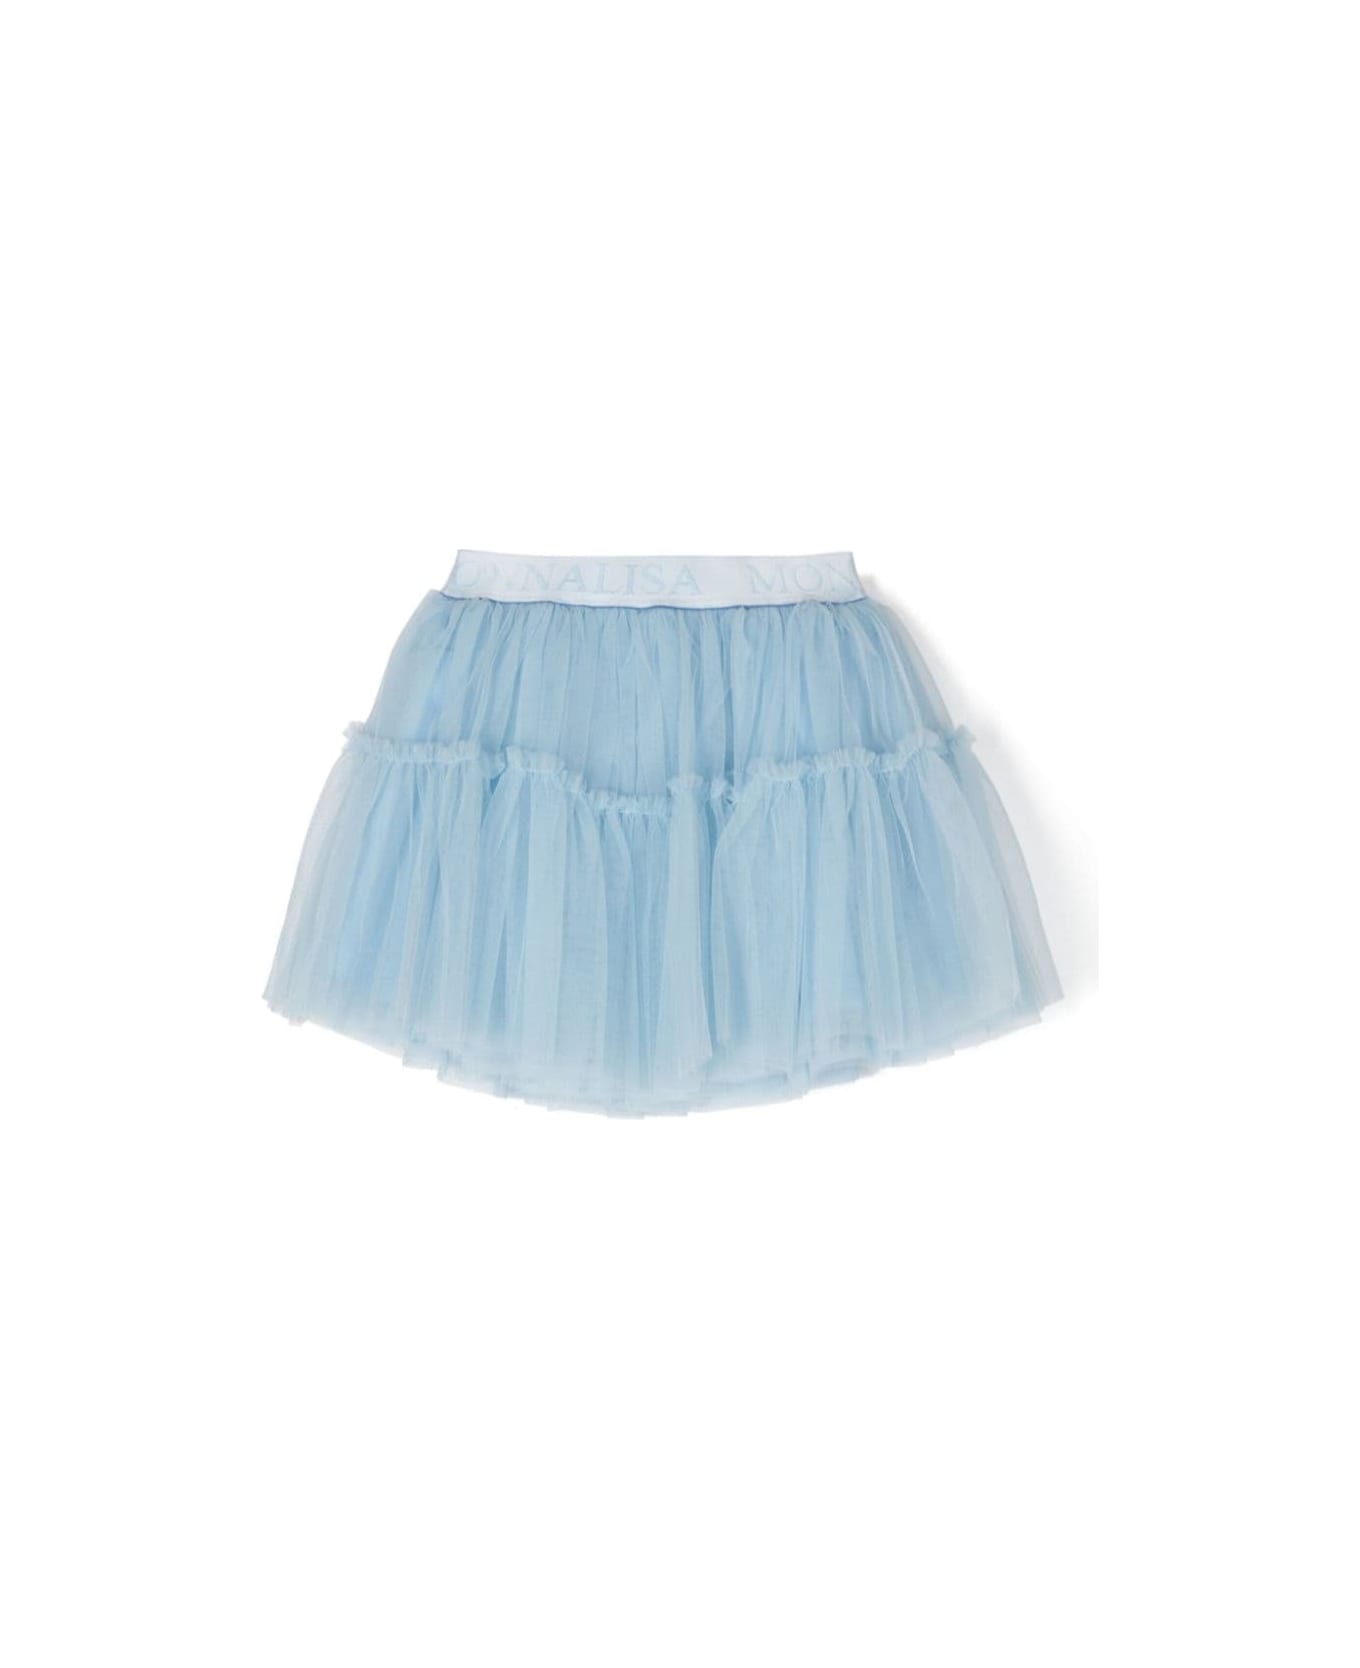 Monnalisa Light Blue Flounced Skirt With Branded Band In Polyamide Girl - Light blue